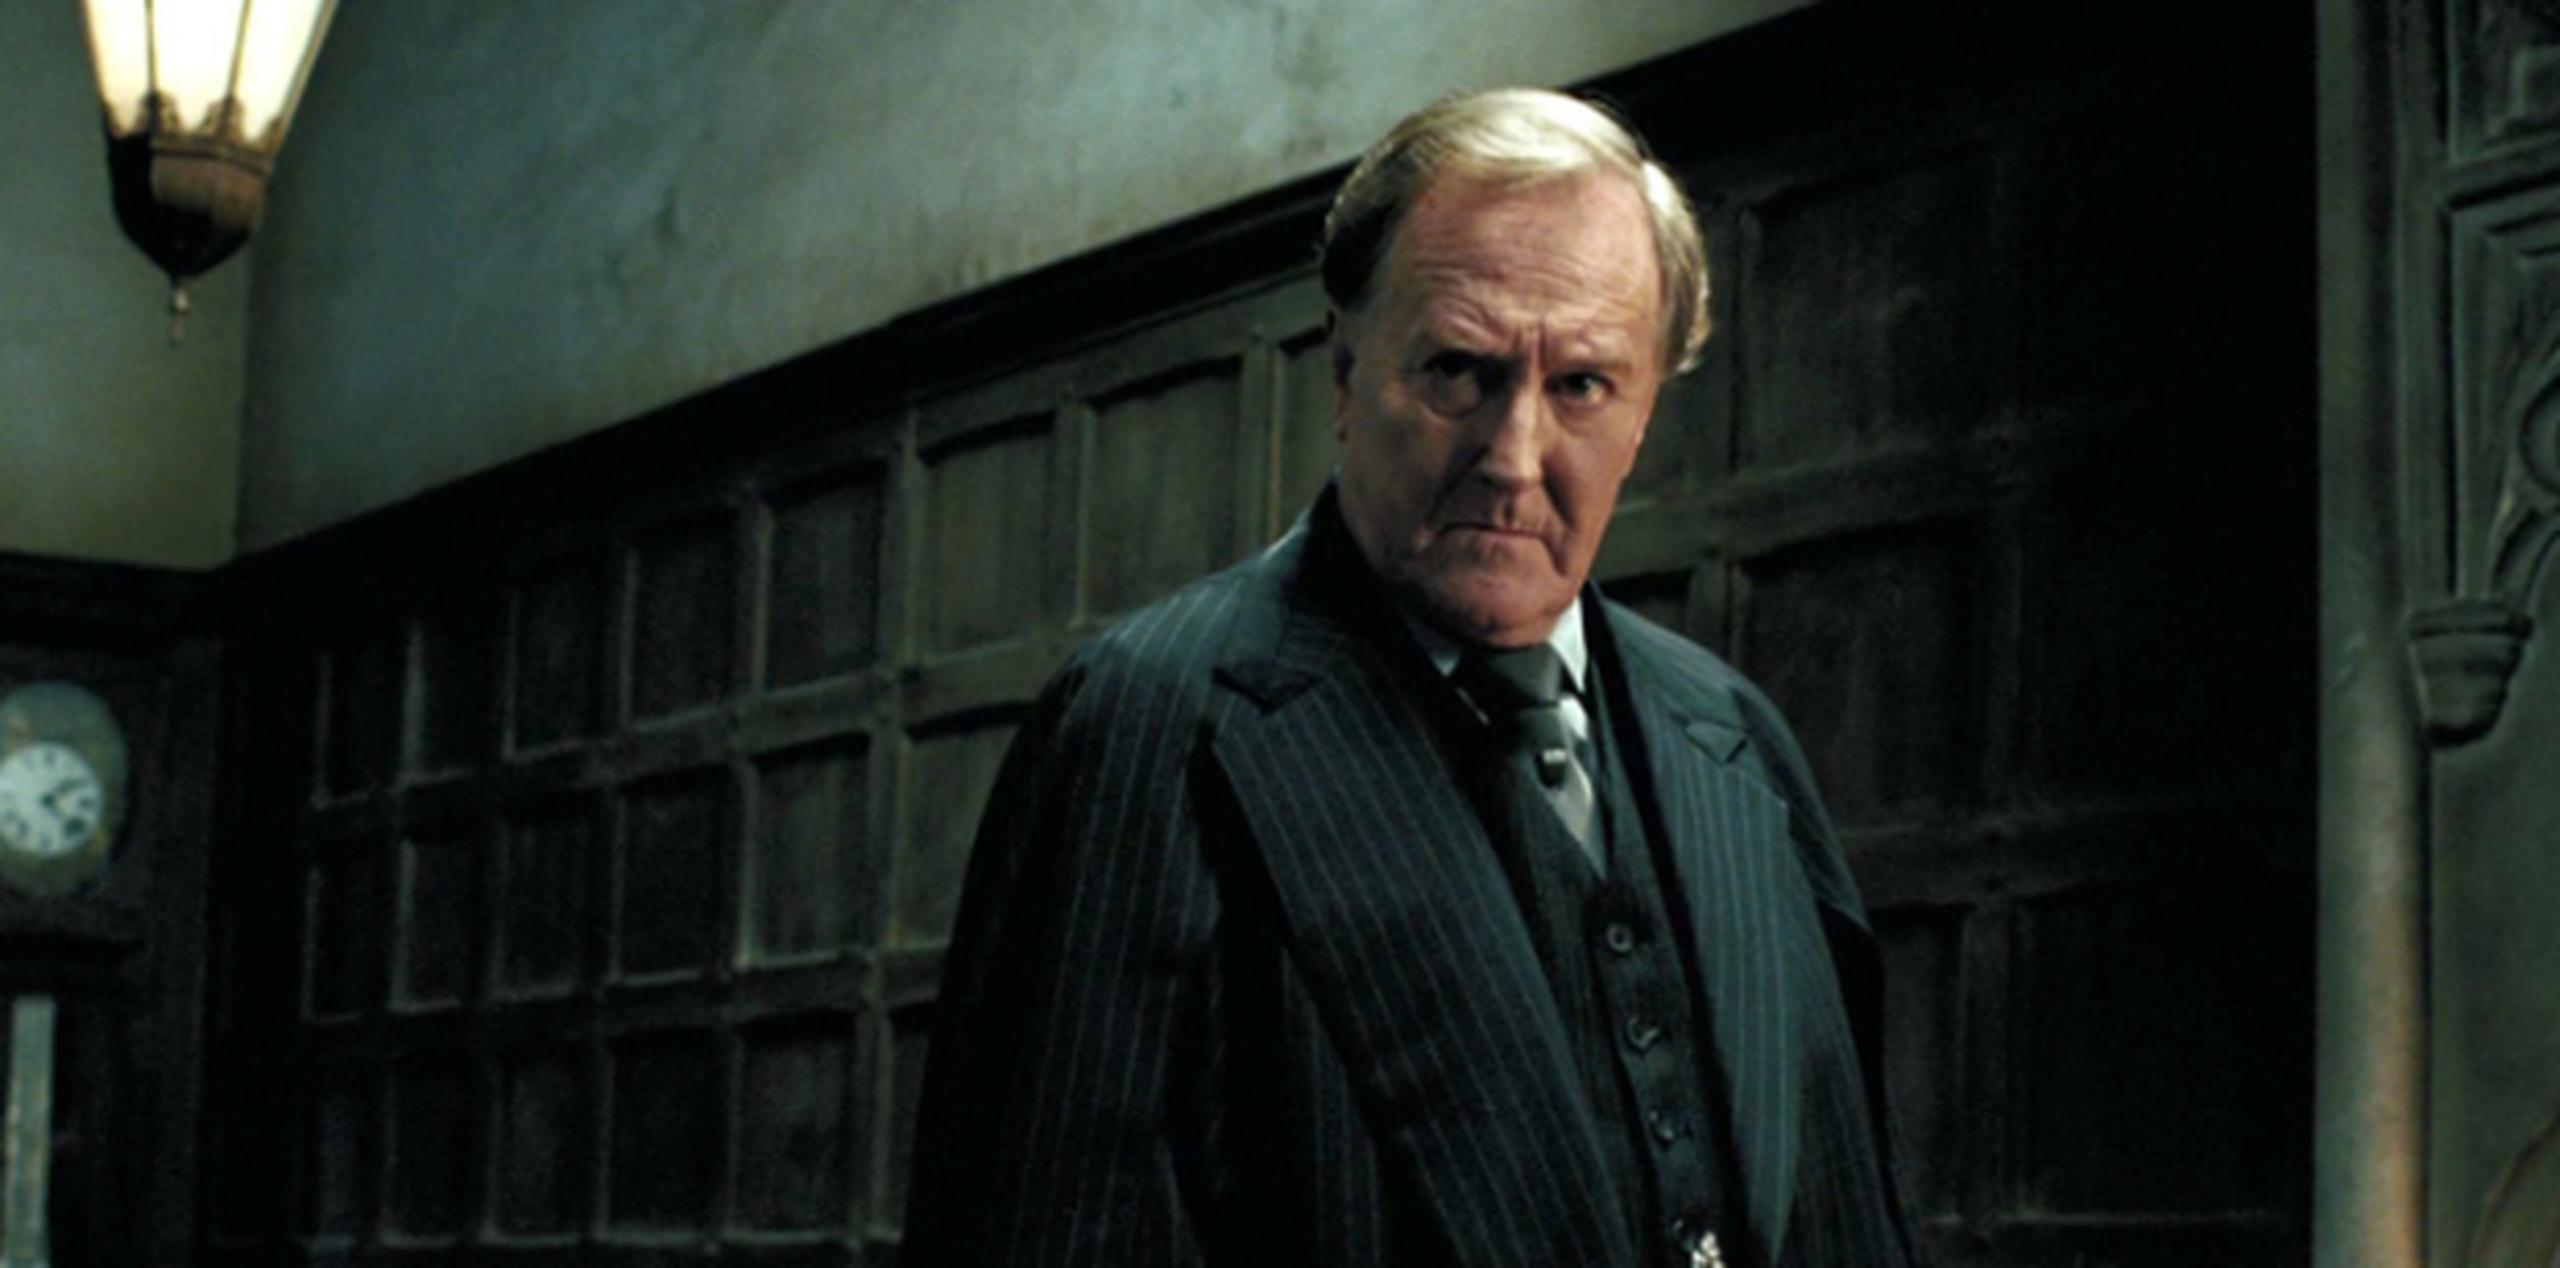 El actor Robert Hardy como Cornelius Fudge en "Harry Potter". (Warner Bros. Pictures)